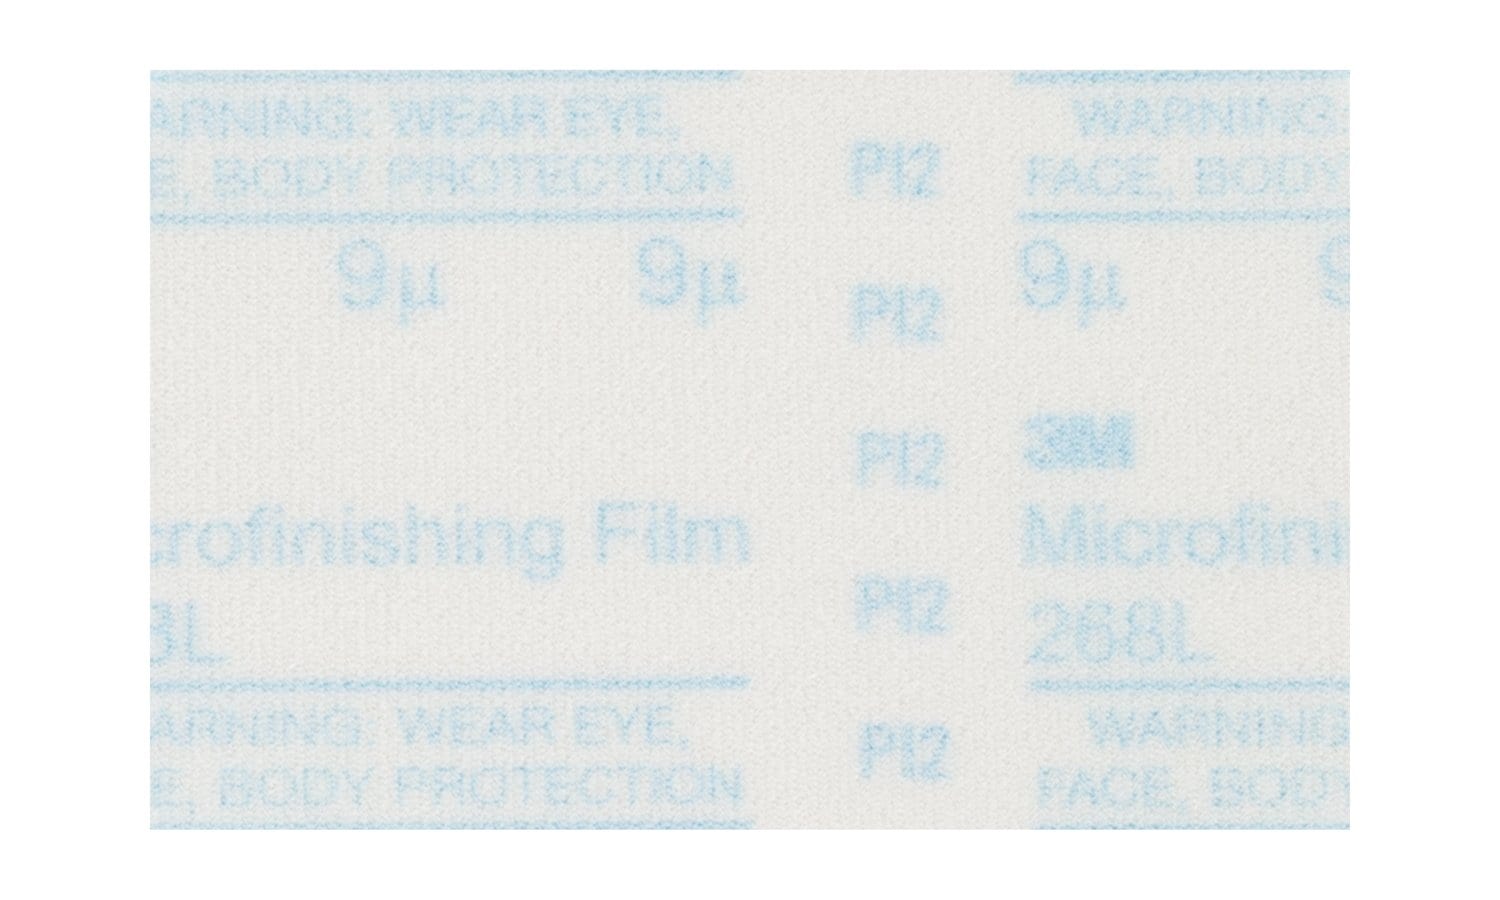 7010361003 - 3M Microfinishing PSA Film Type D Sheet Roll 268L, 5 in x 8 in, 80
Mic,125 Sheets/Roll, 2 Rolls/Case